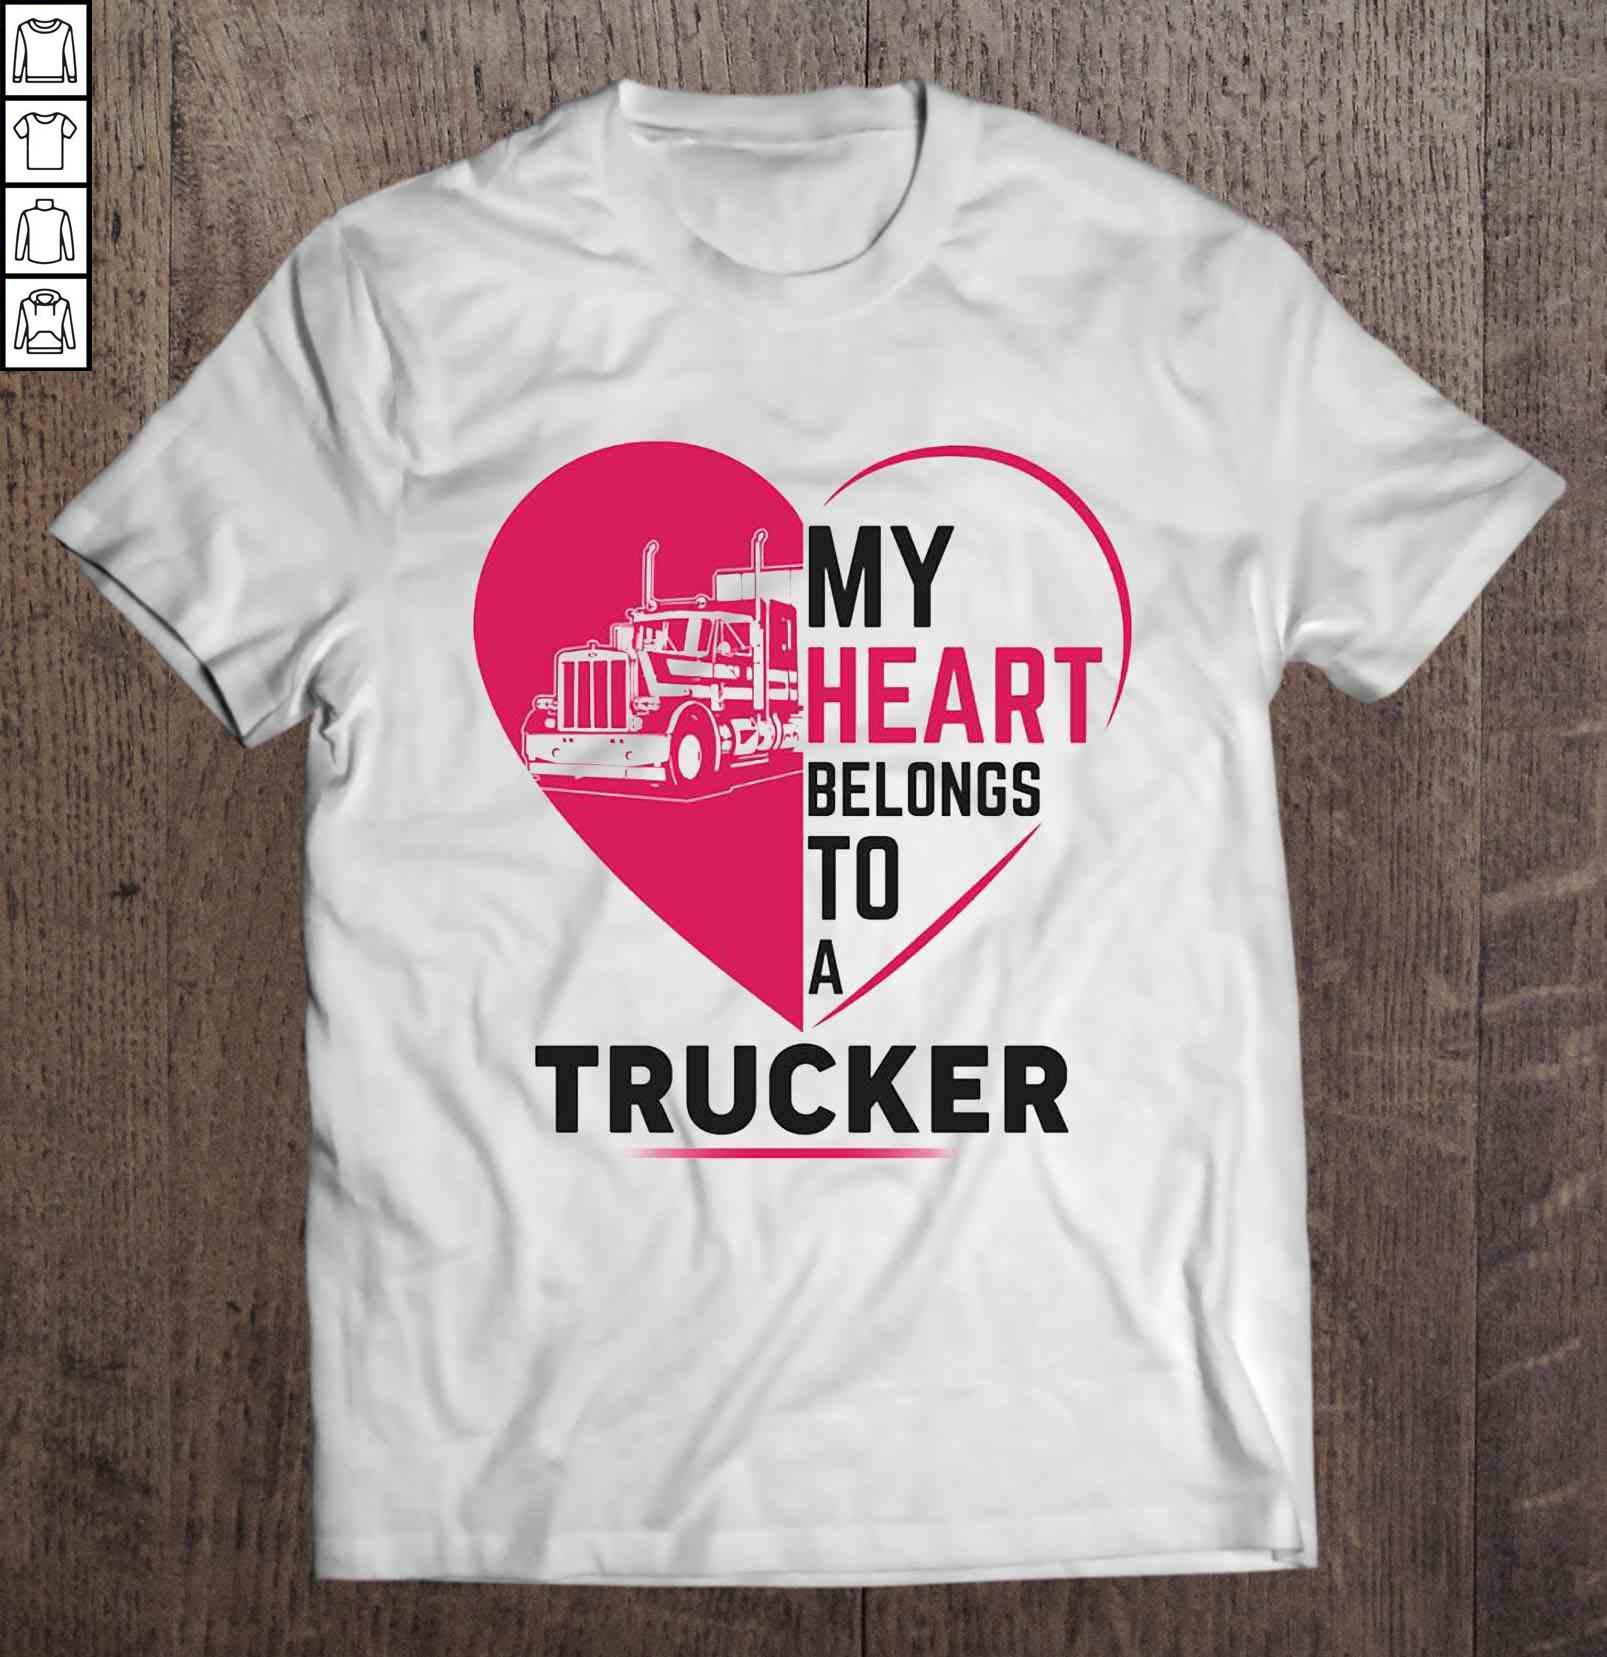 My Heart Belongs To A Trucker T-shirt